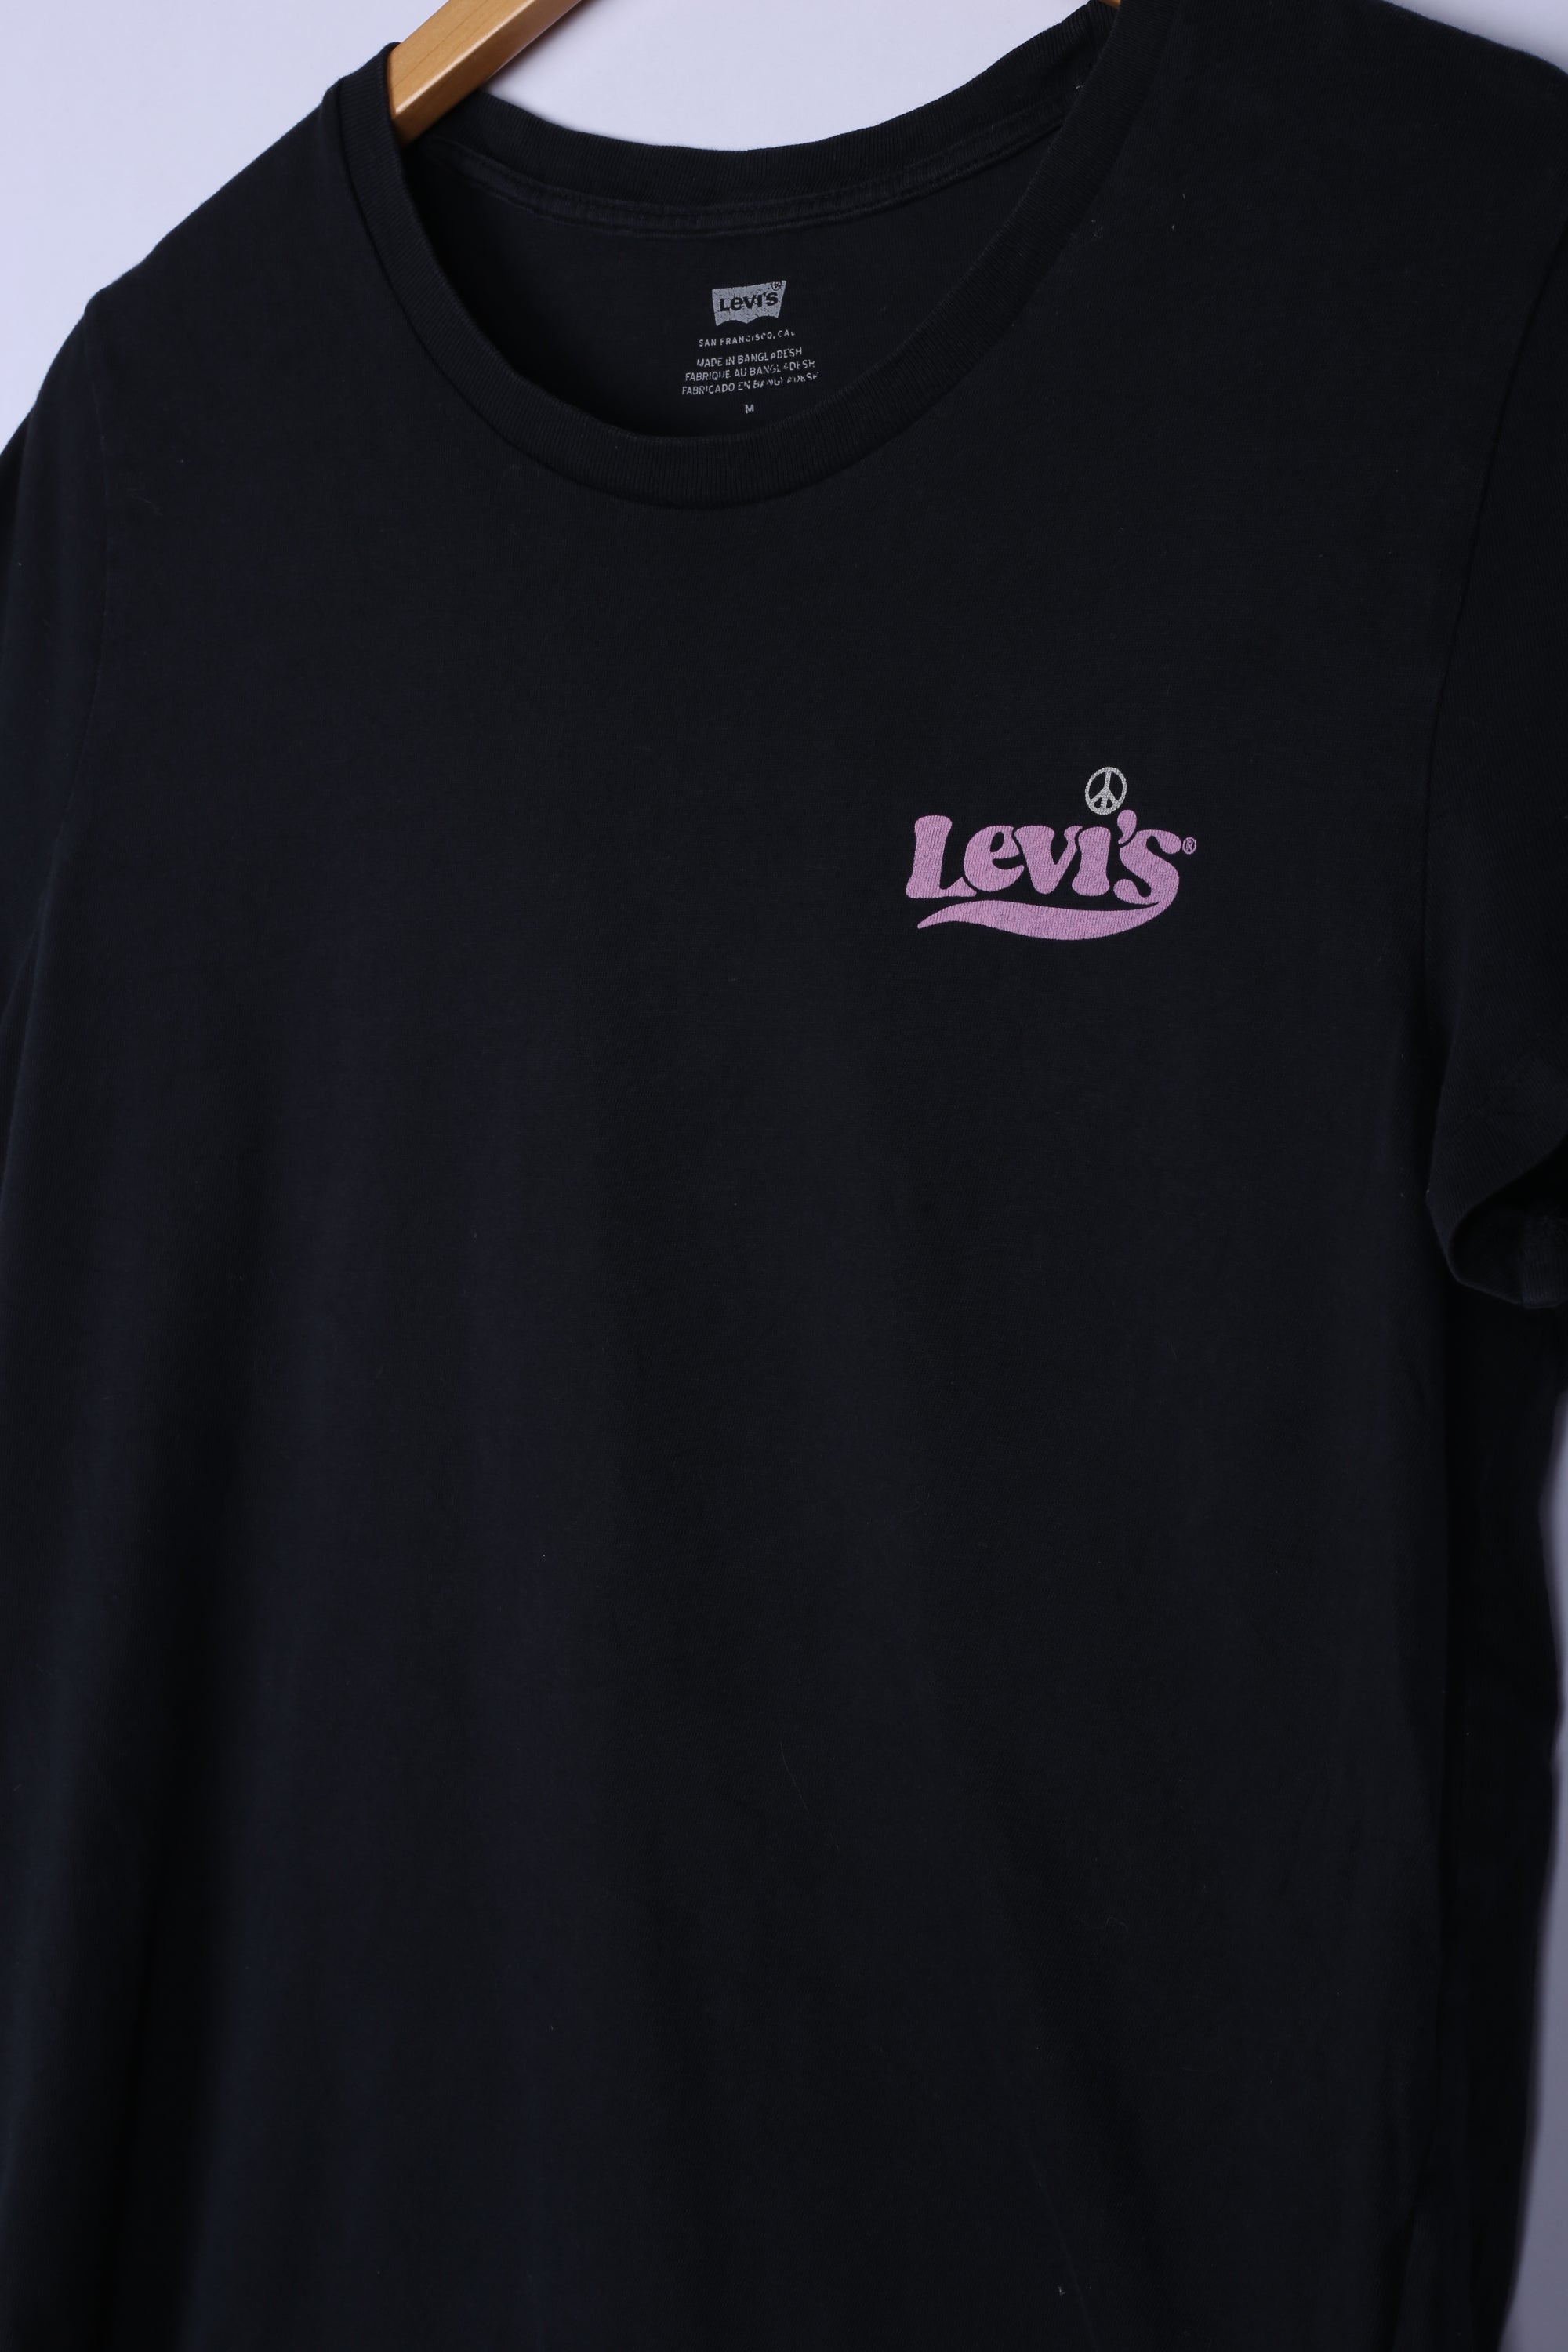 Vintage 90's Levis Tee Black